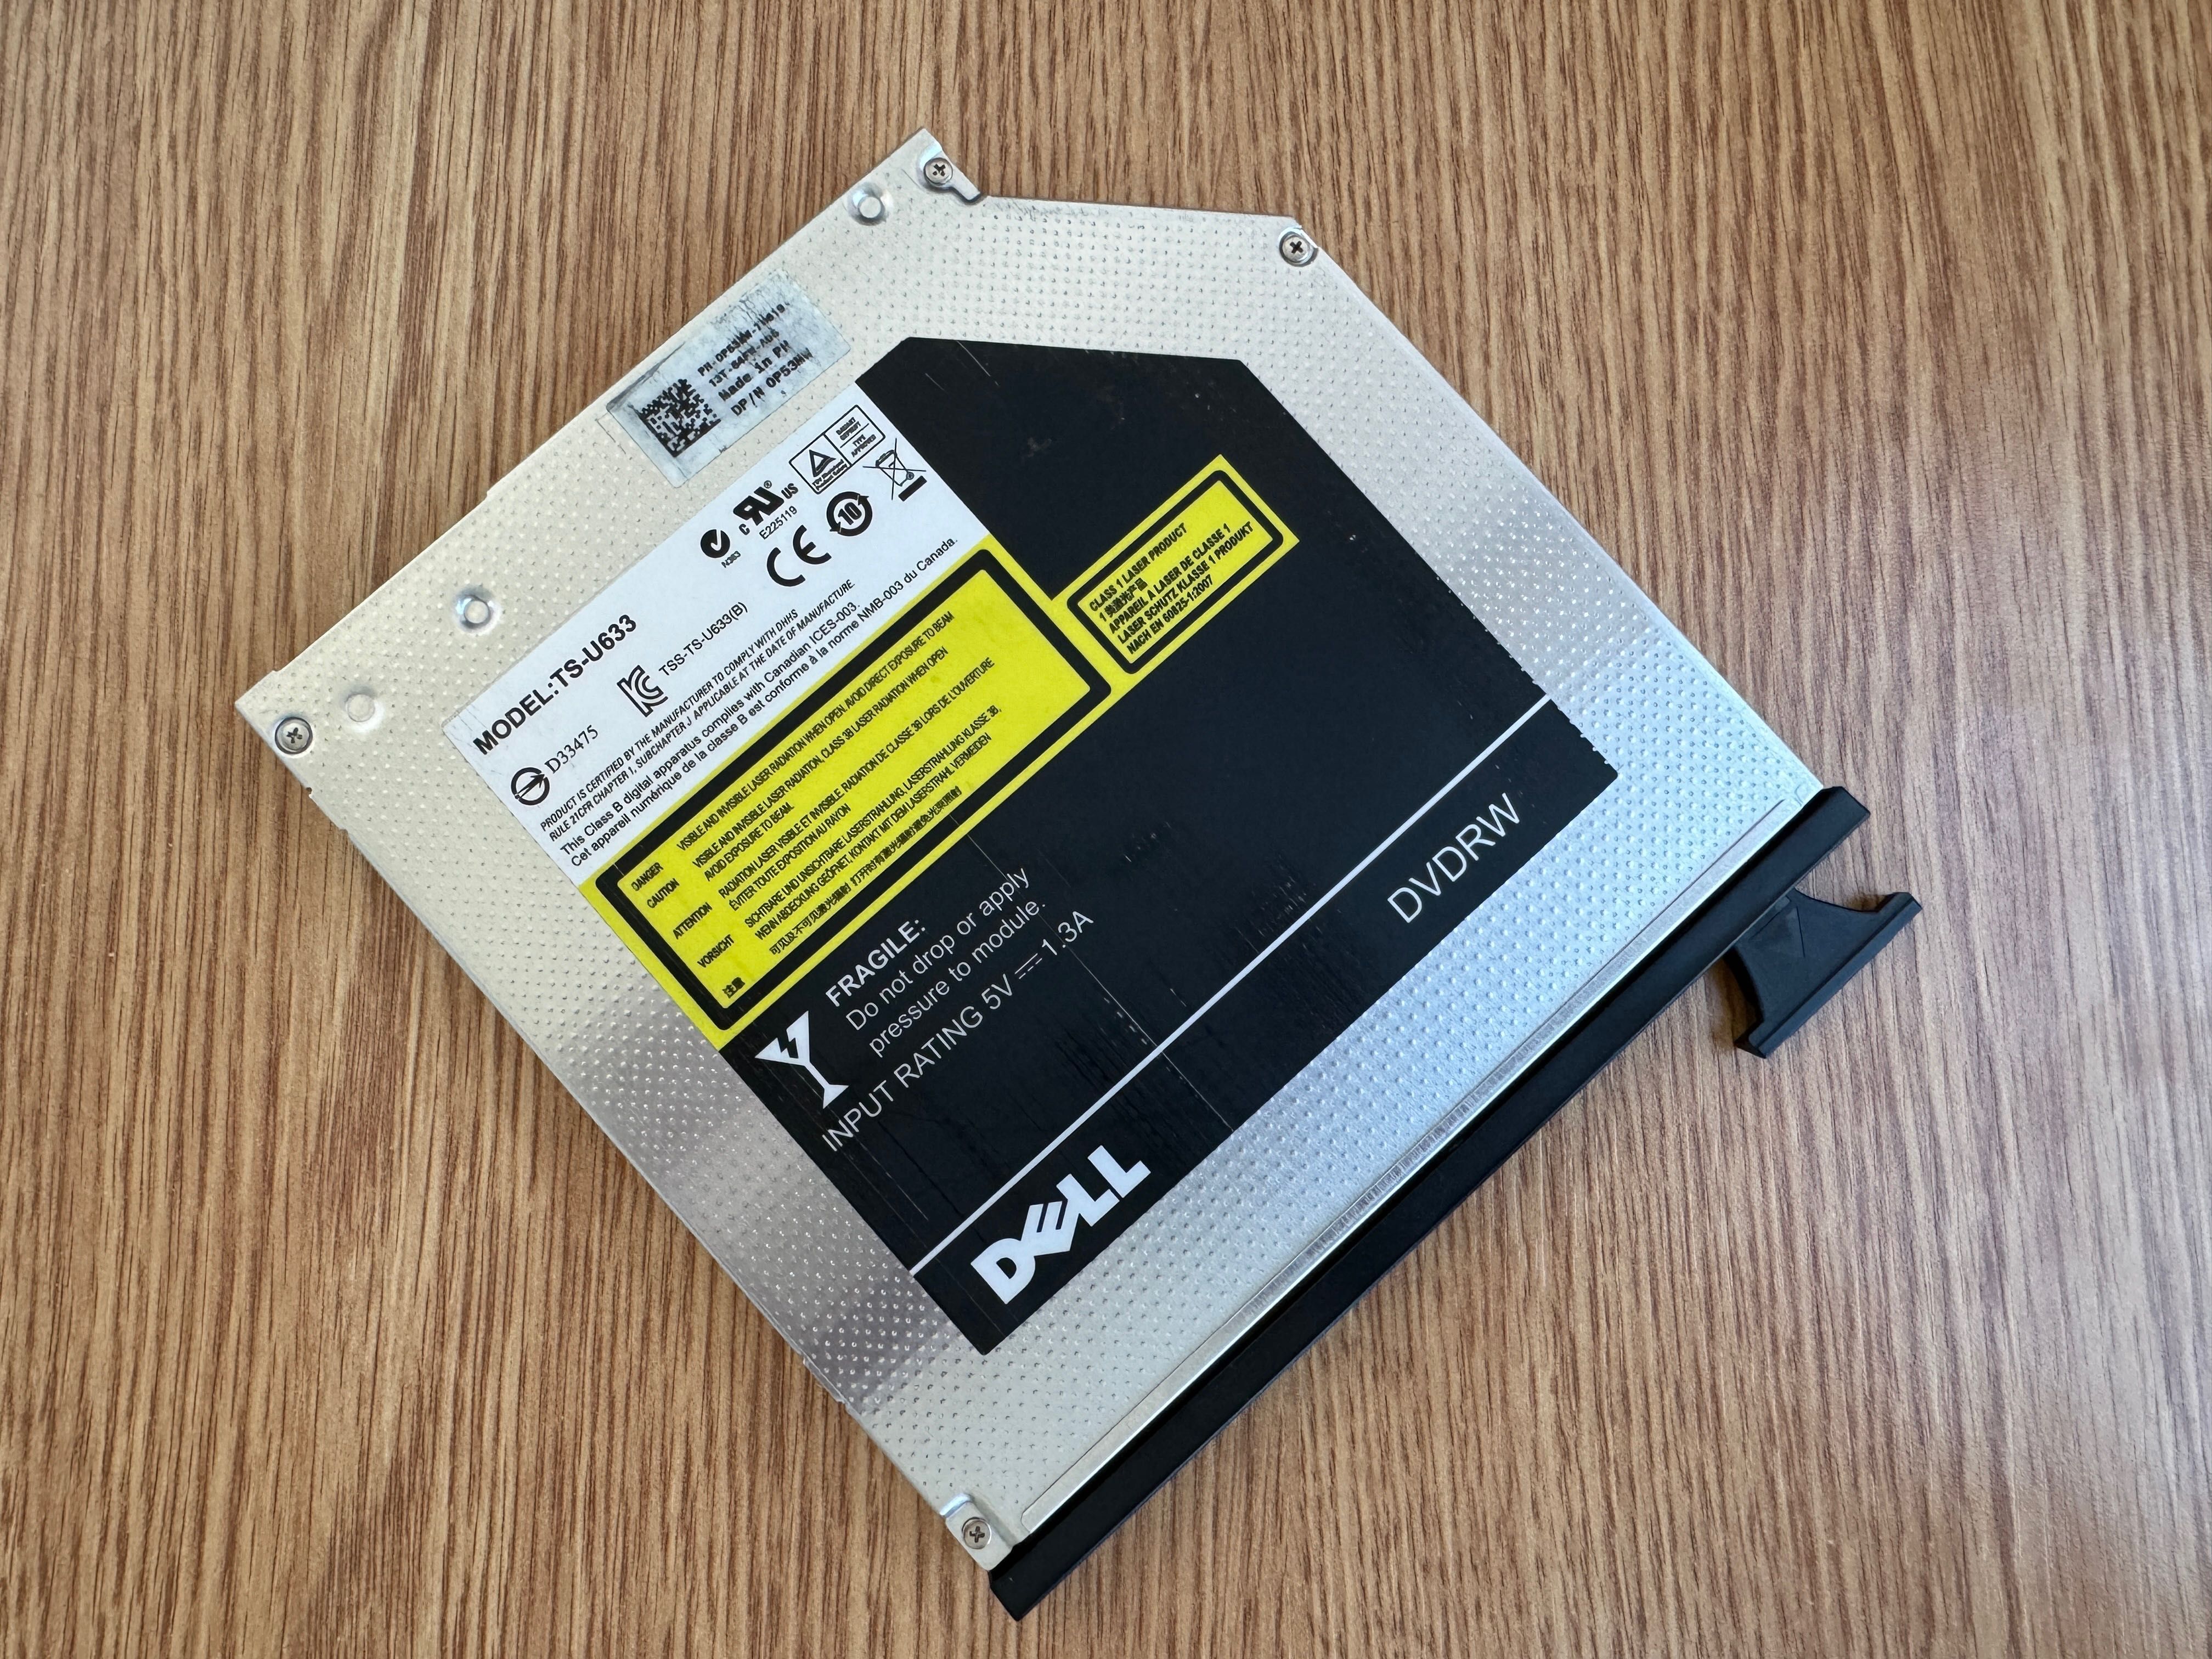 Dezmembrez Laptop Dell E6410